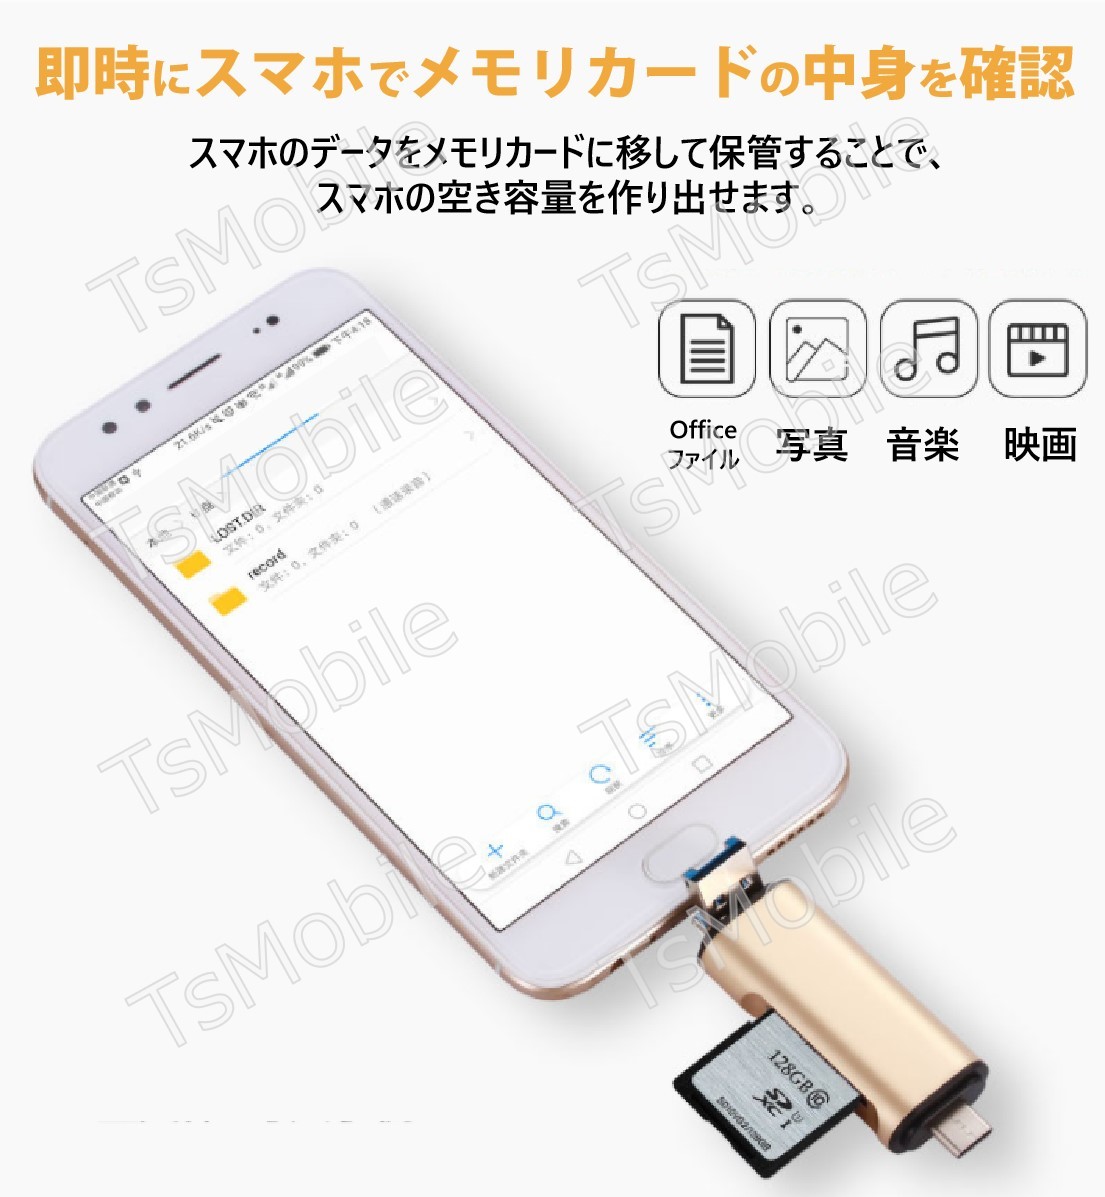 ●5in1 TypeC USB MicroUSB SD TFカードリーダー OTG変換コネクタ Macbook メモリカードデータ移行 バックアップ スマホ 保存移動Android_画像9